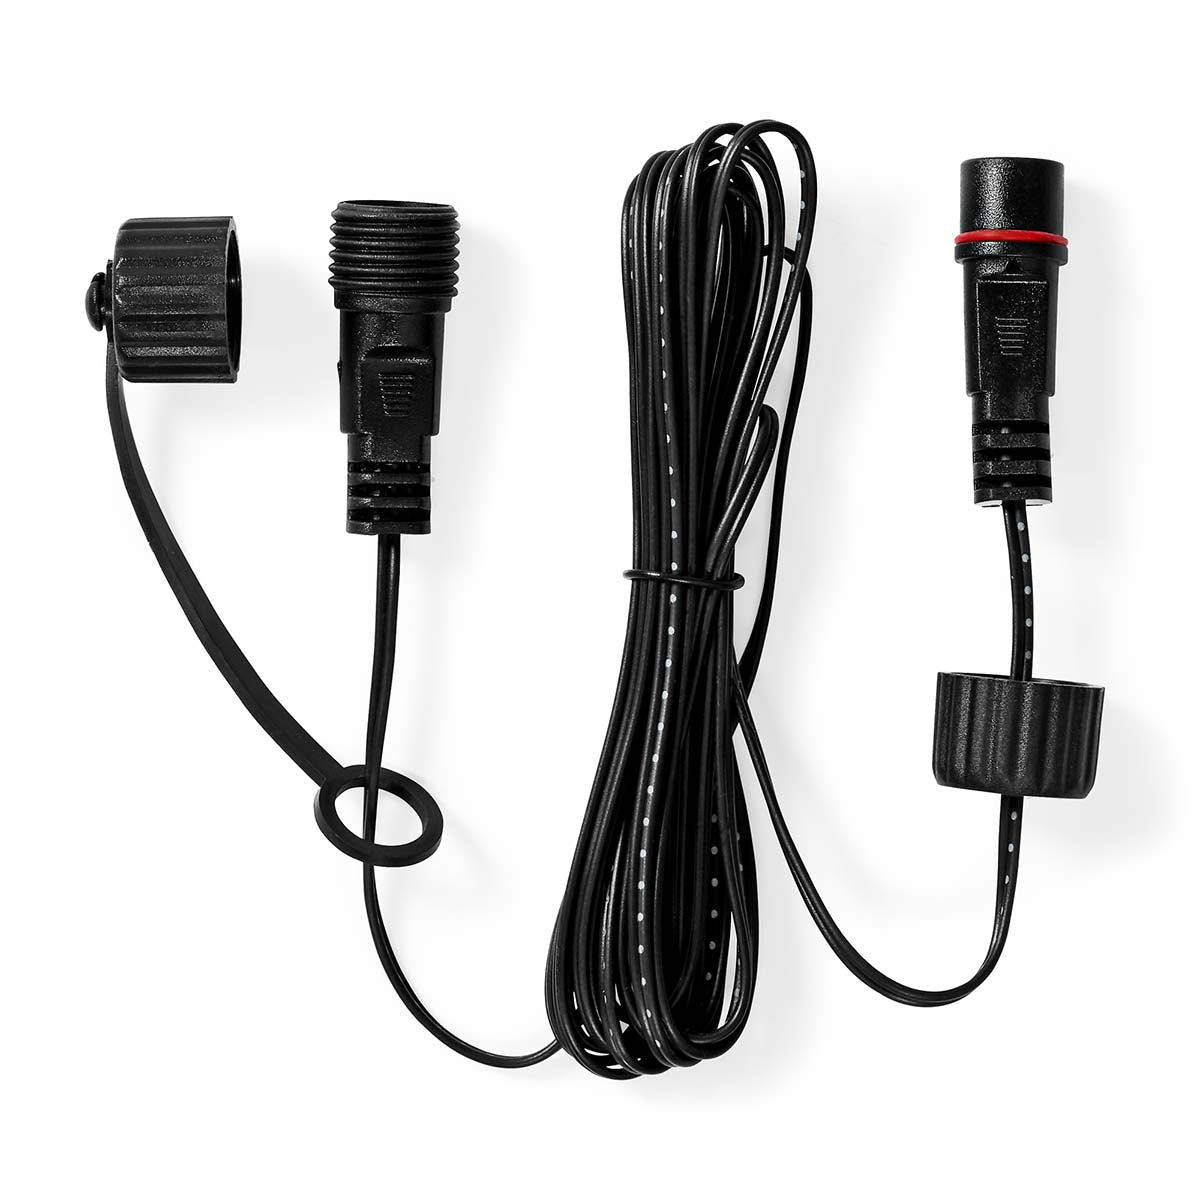 SmartLife LED-Zubehör Kabel 3m schwarz jetzt kaufen - Aktionskönig